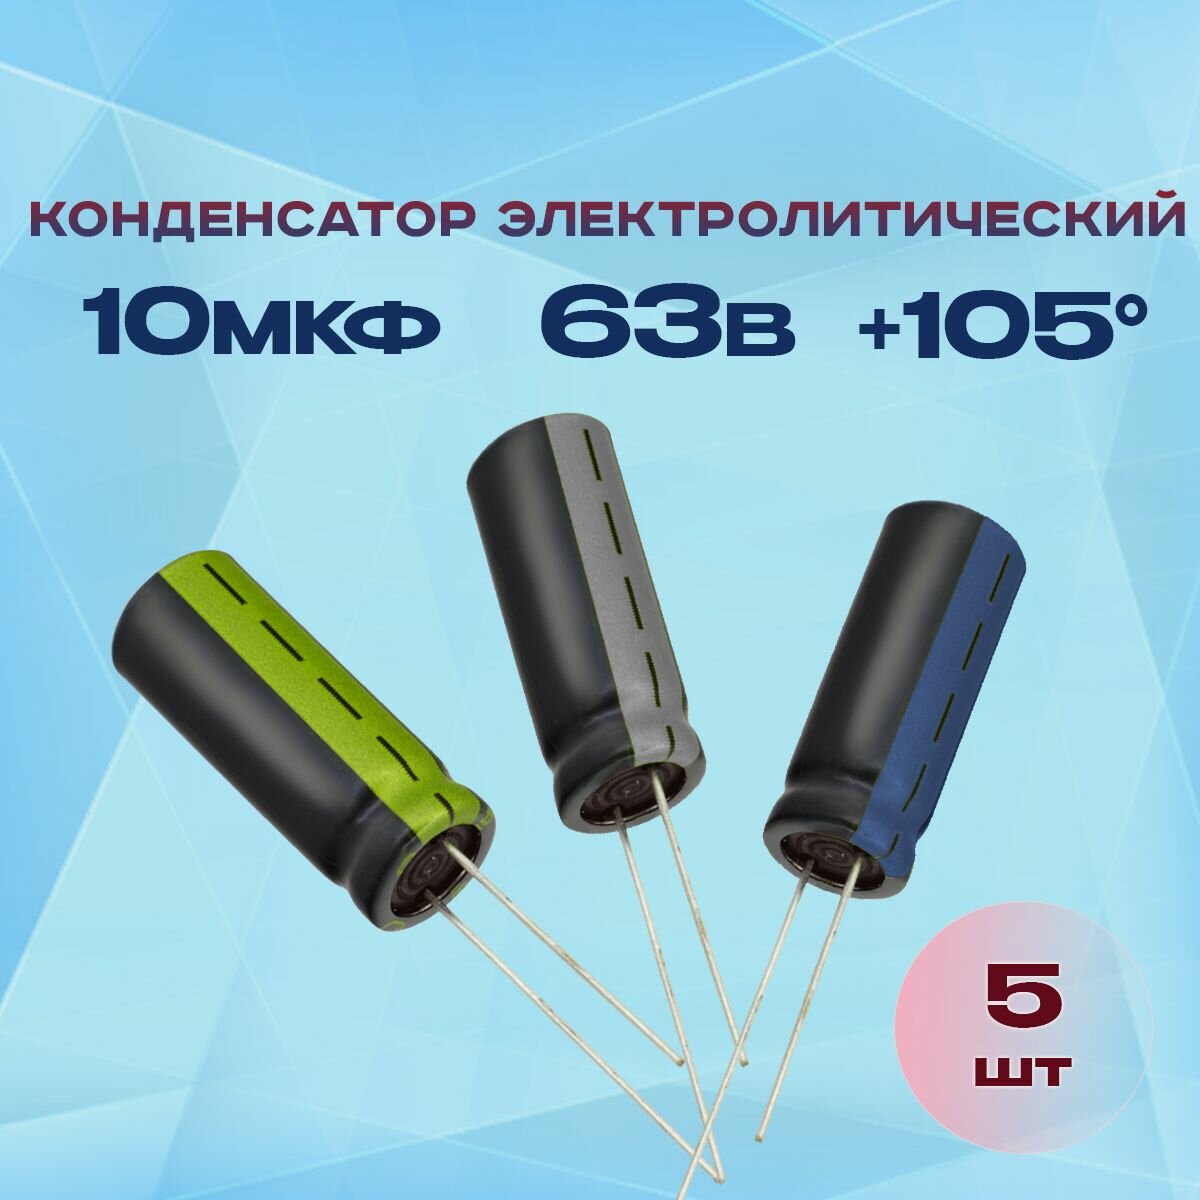 Конденсатор электролитический 10МКФХ63В +105 5 шт.